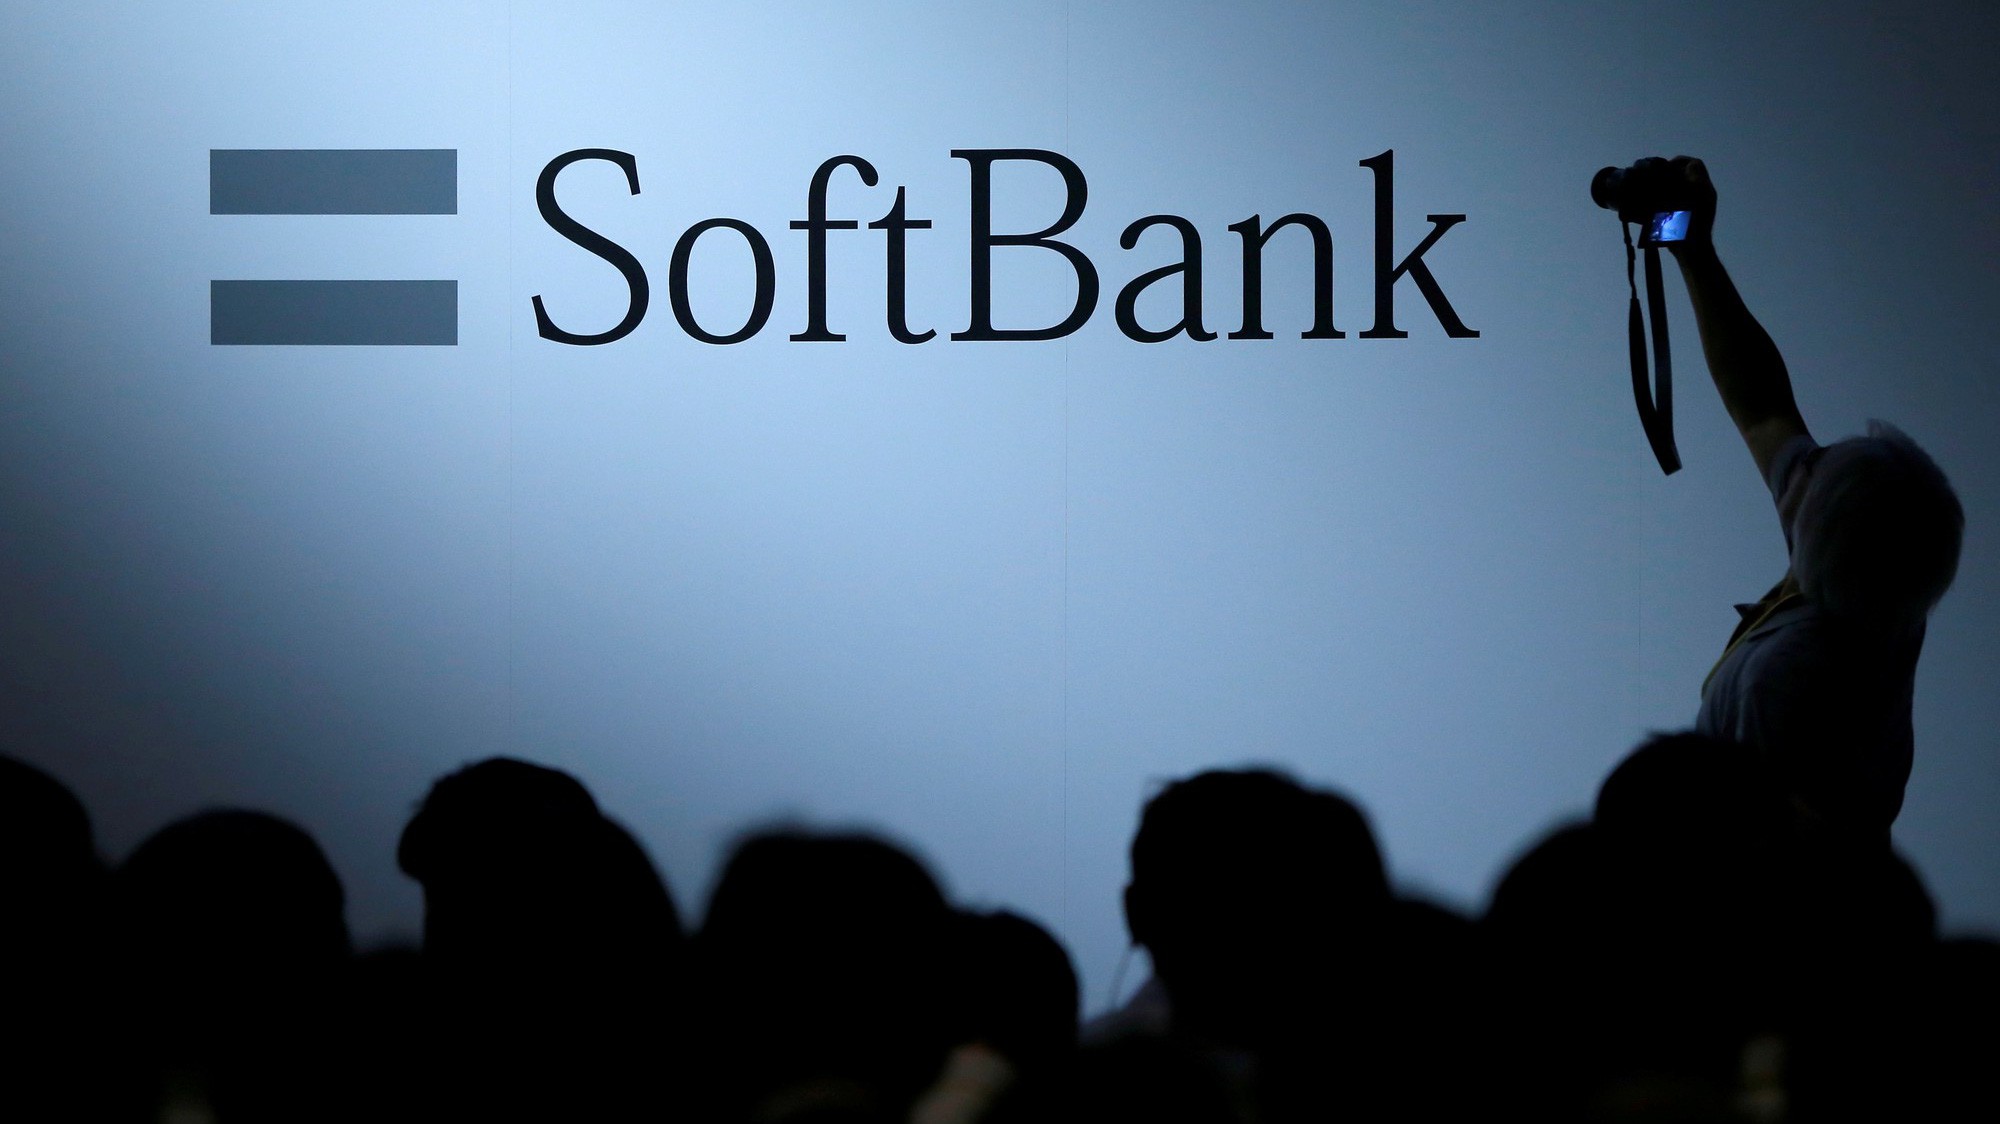 Tìm hiểu về tập đoàn SoftBank